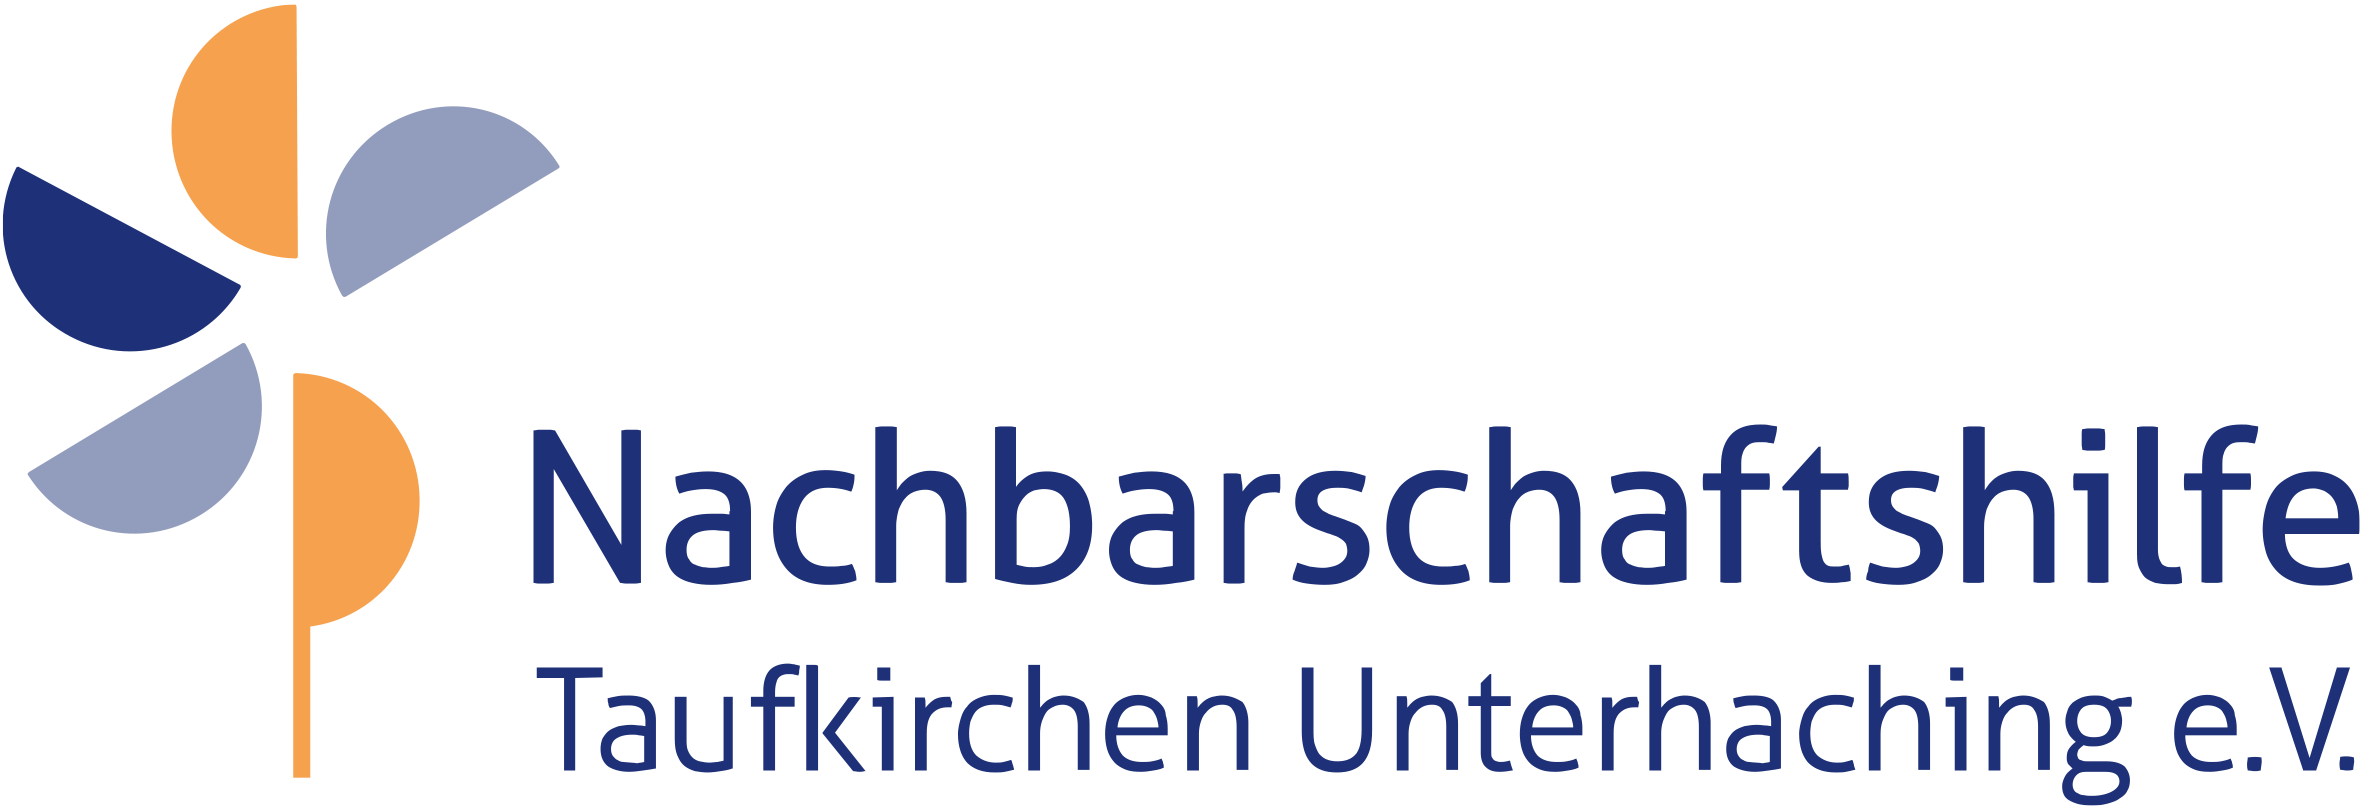 Nachbarschaftshilfe Taufkirchen Unterhaching - Entlastung für pflegende Angehörige